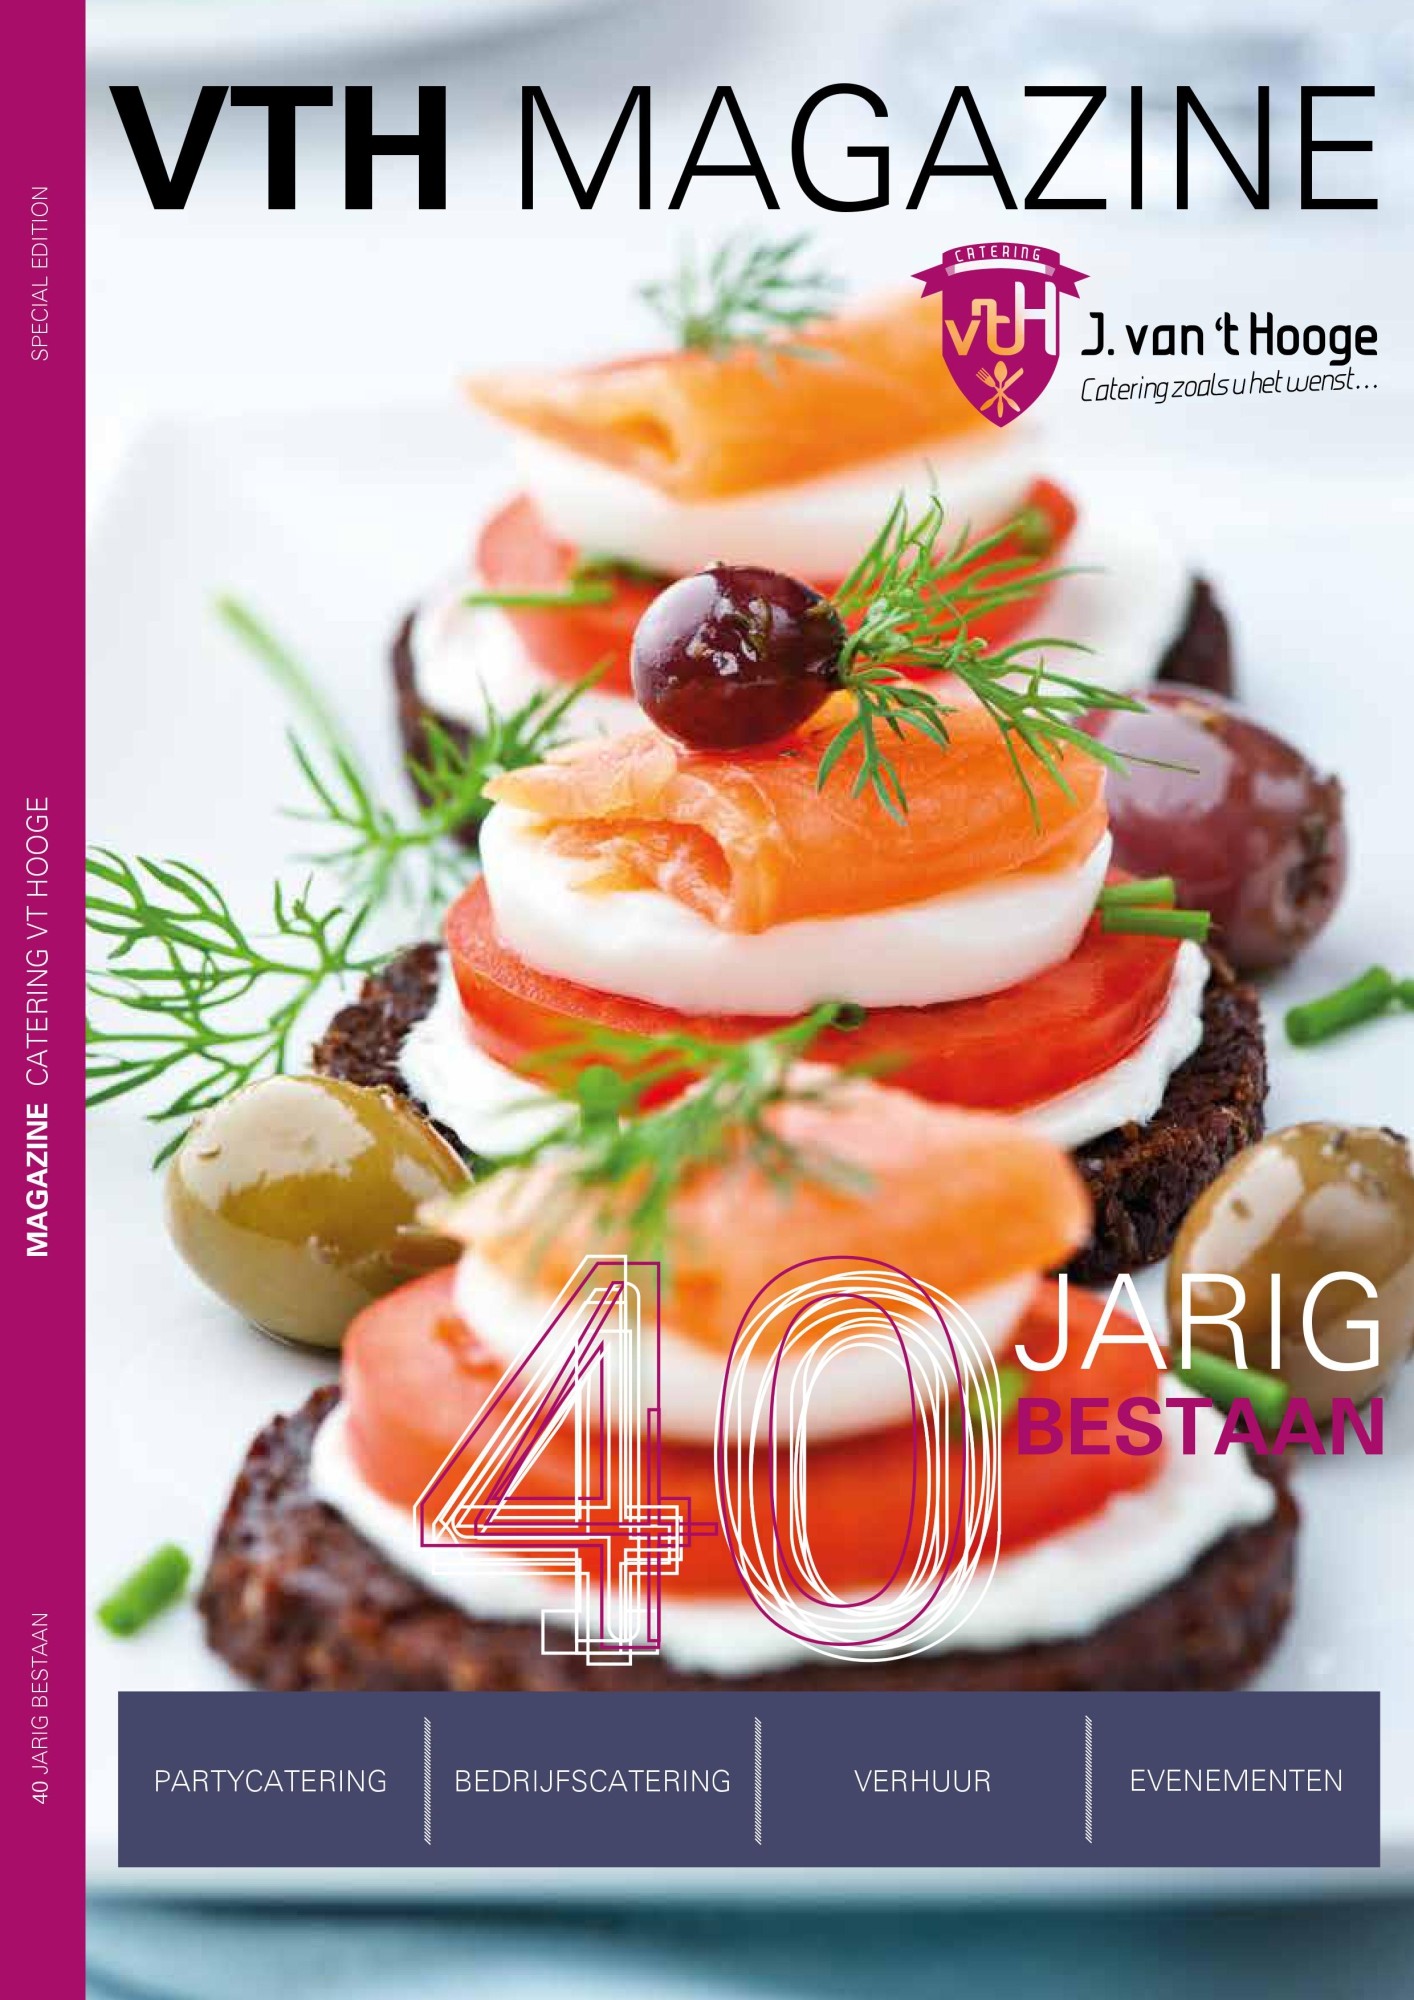 Magazine Catering van 't Hooge 40 jaar bestaan